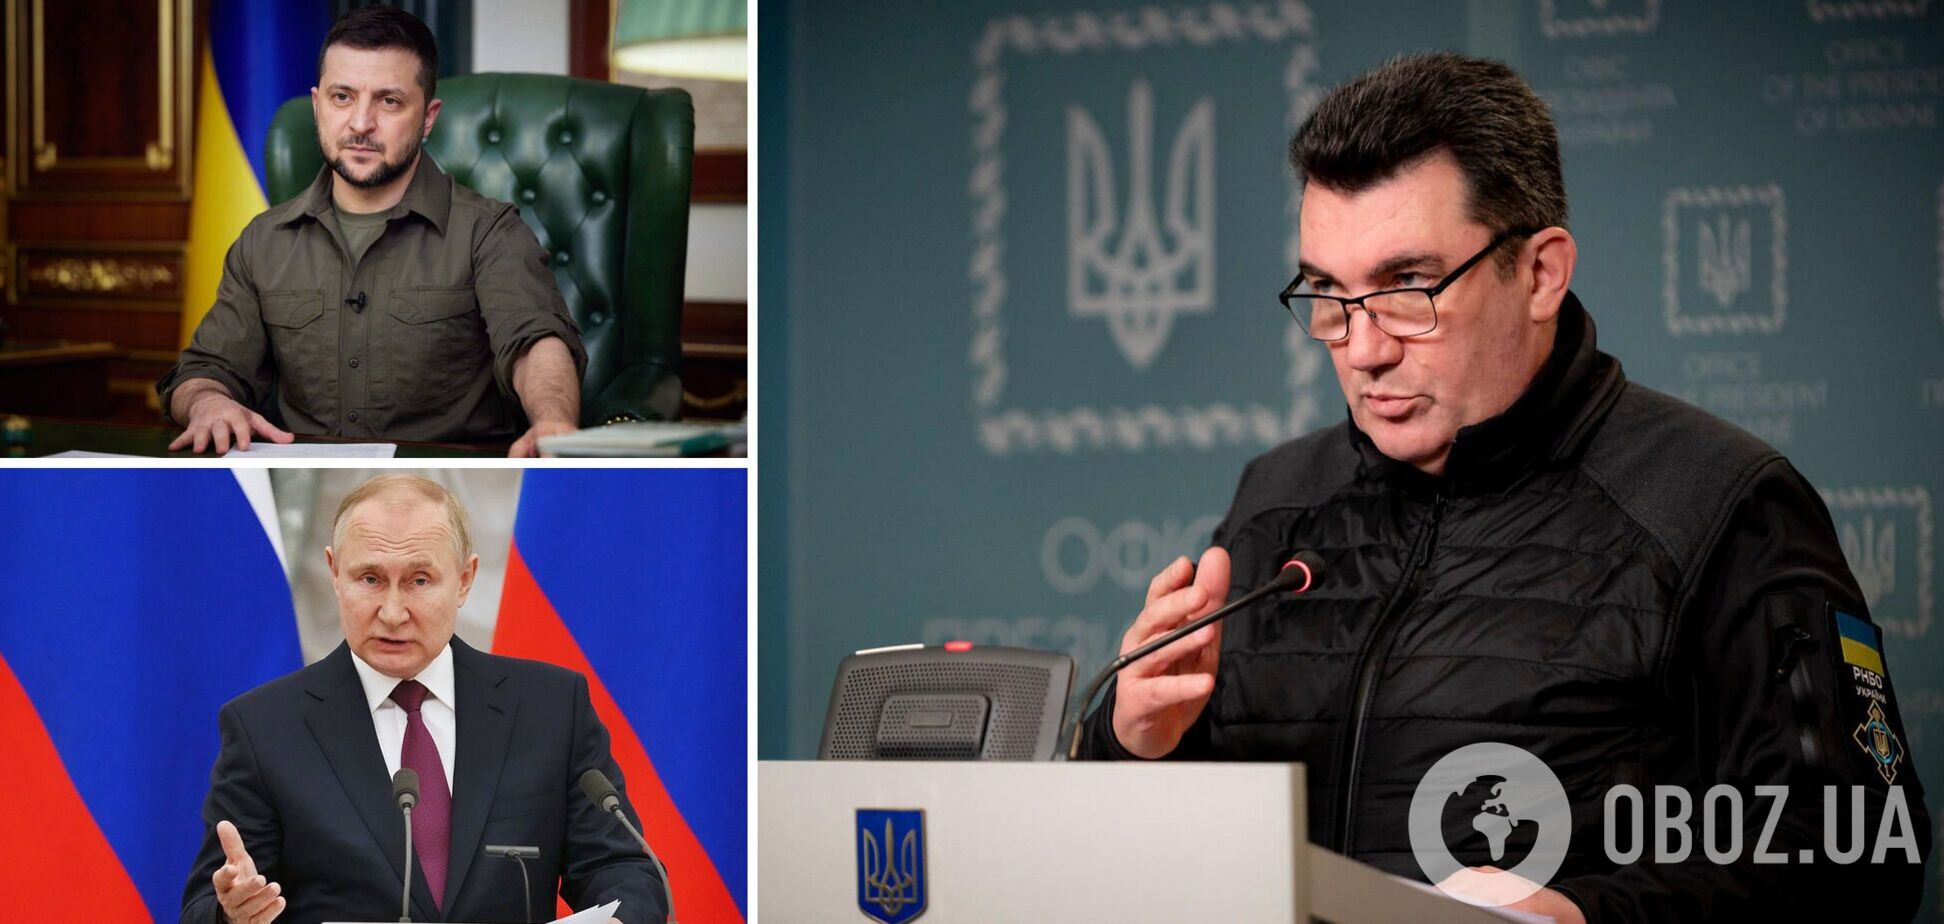 Данилов: война будет непростой, Путин не отказался от идеи уничтожить руководство Украины